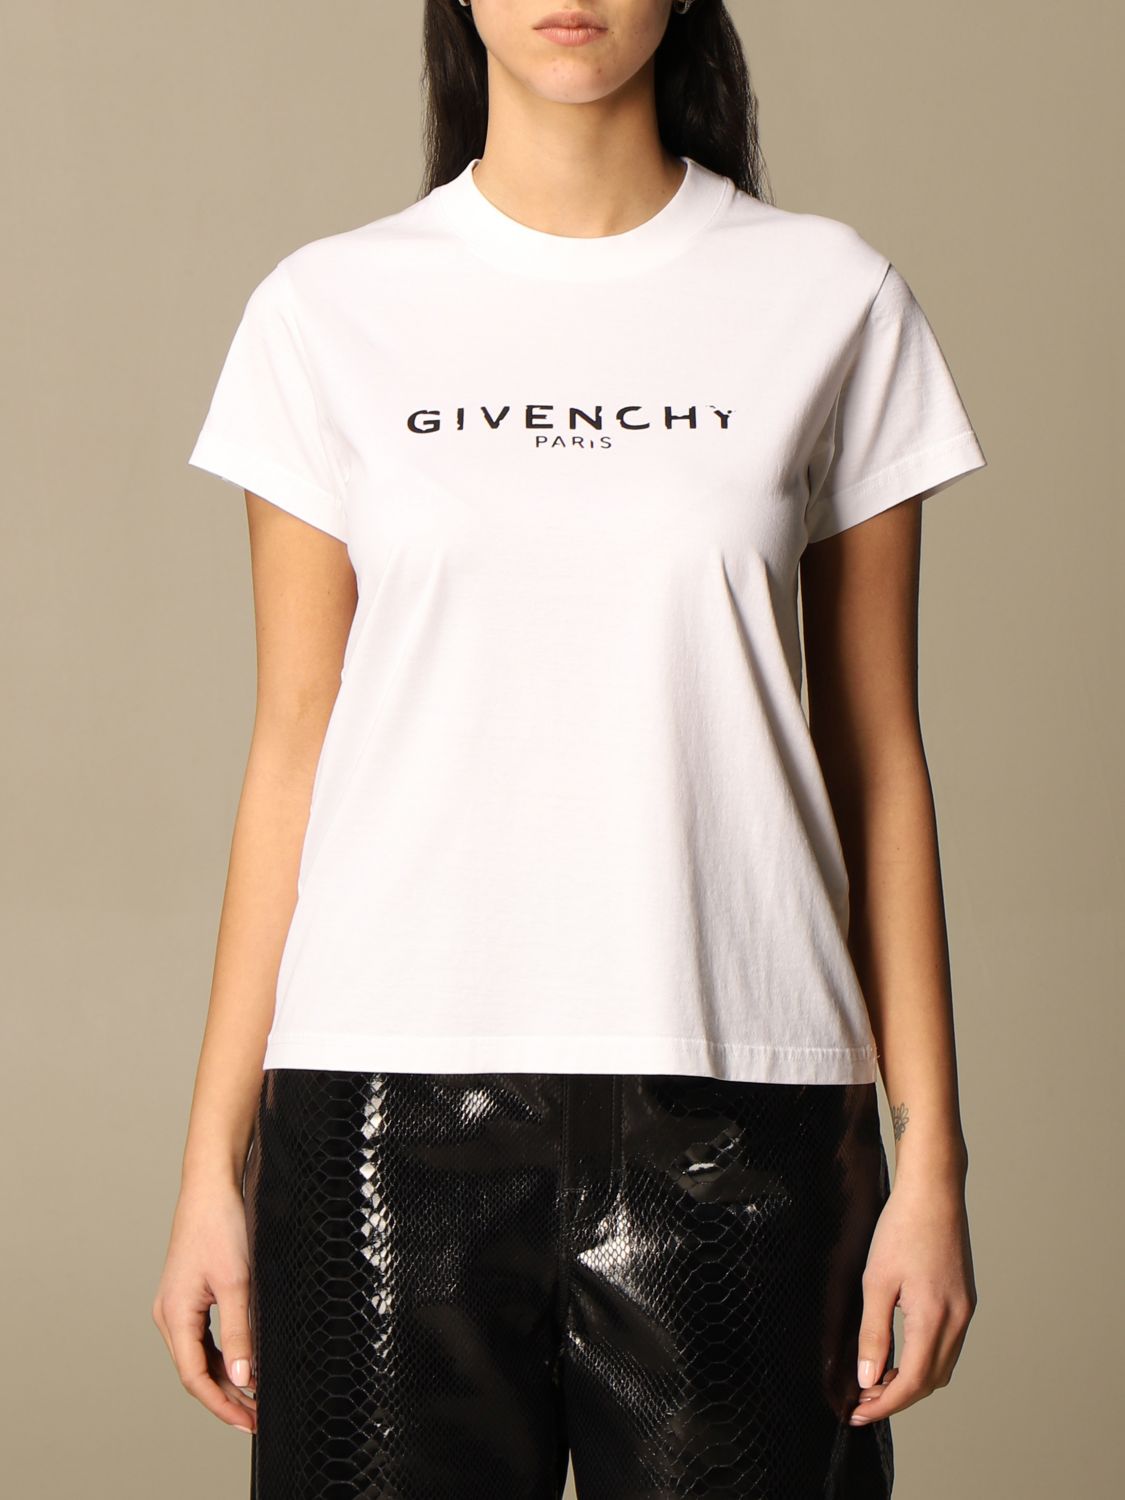 givenchy womens shirt